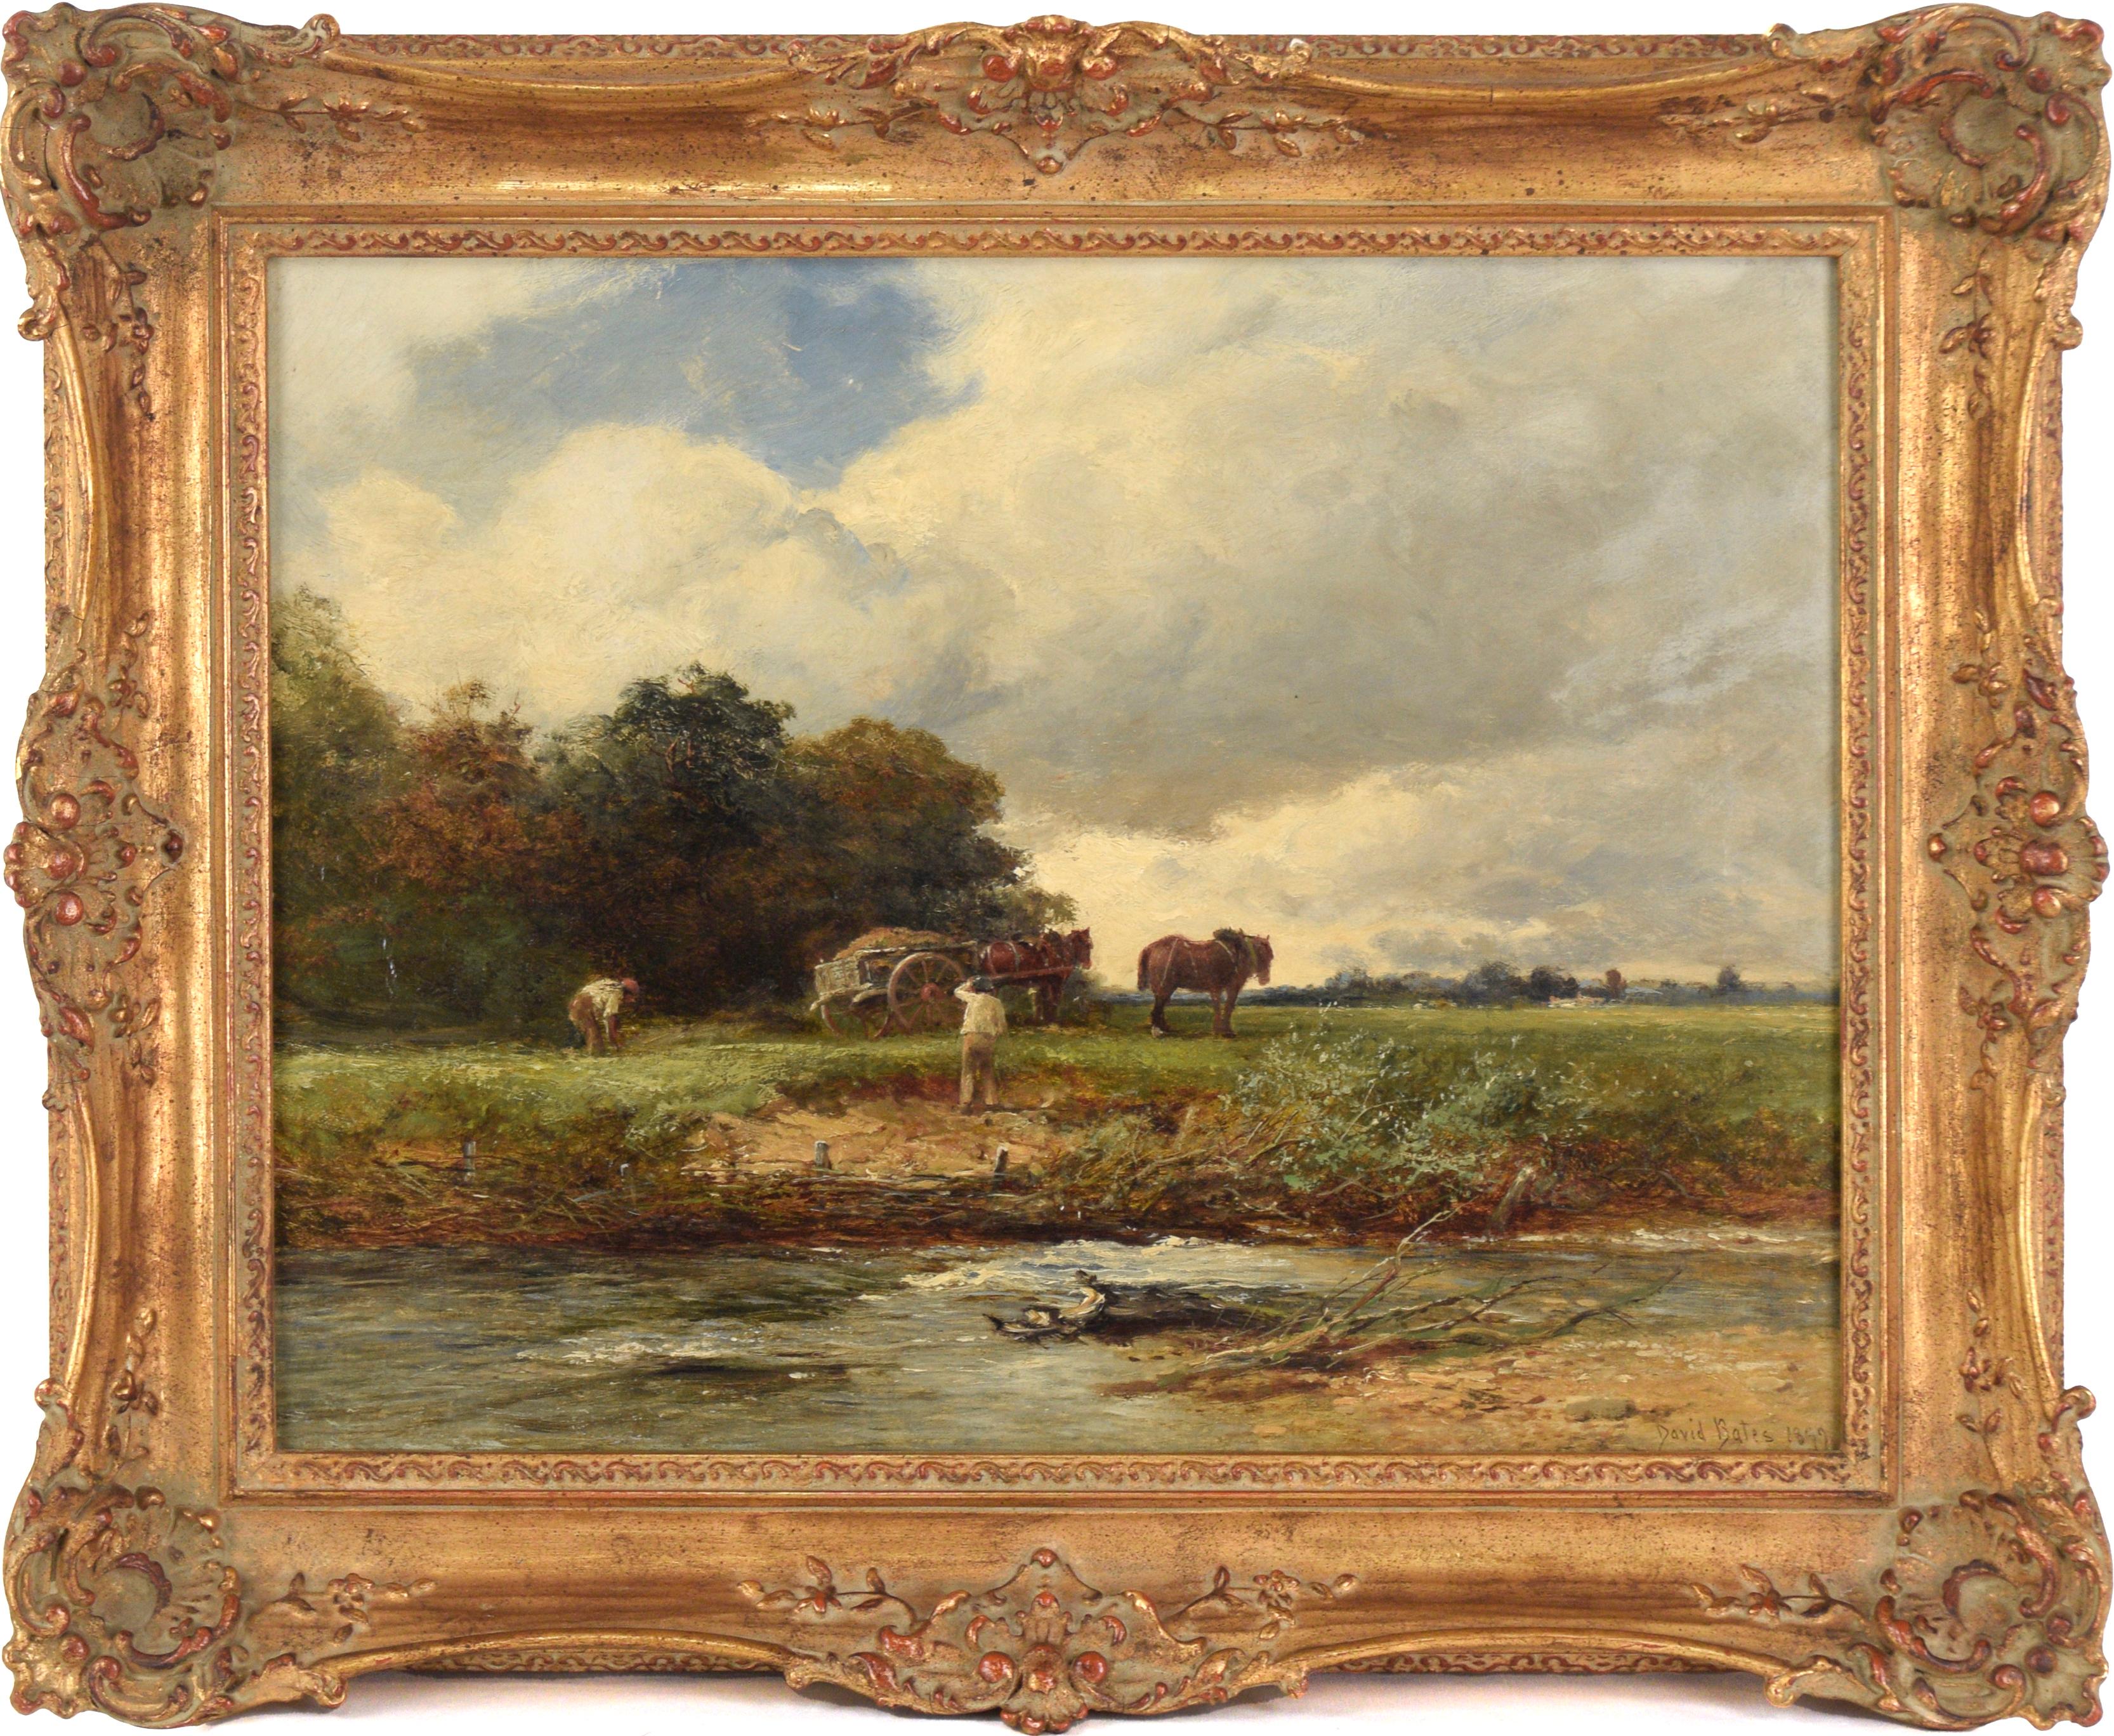 David Bates b.1840 Landscape Painting – ""Mending the Bank"" 1899 - Englisches Pastoral-Ölgemälde auf Leinen von David Bates 